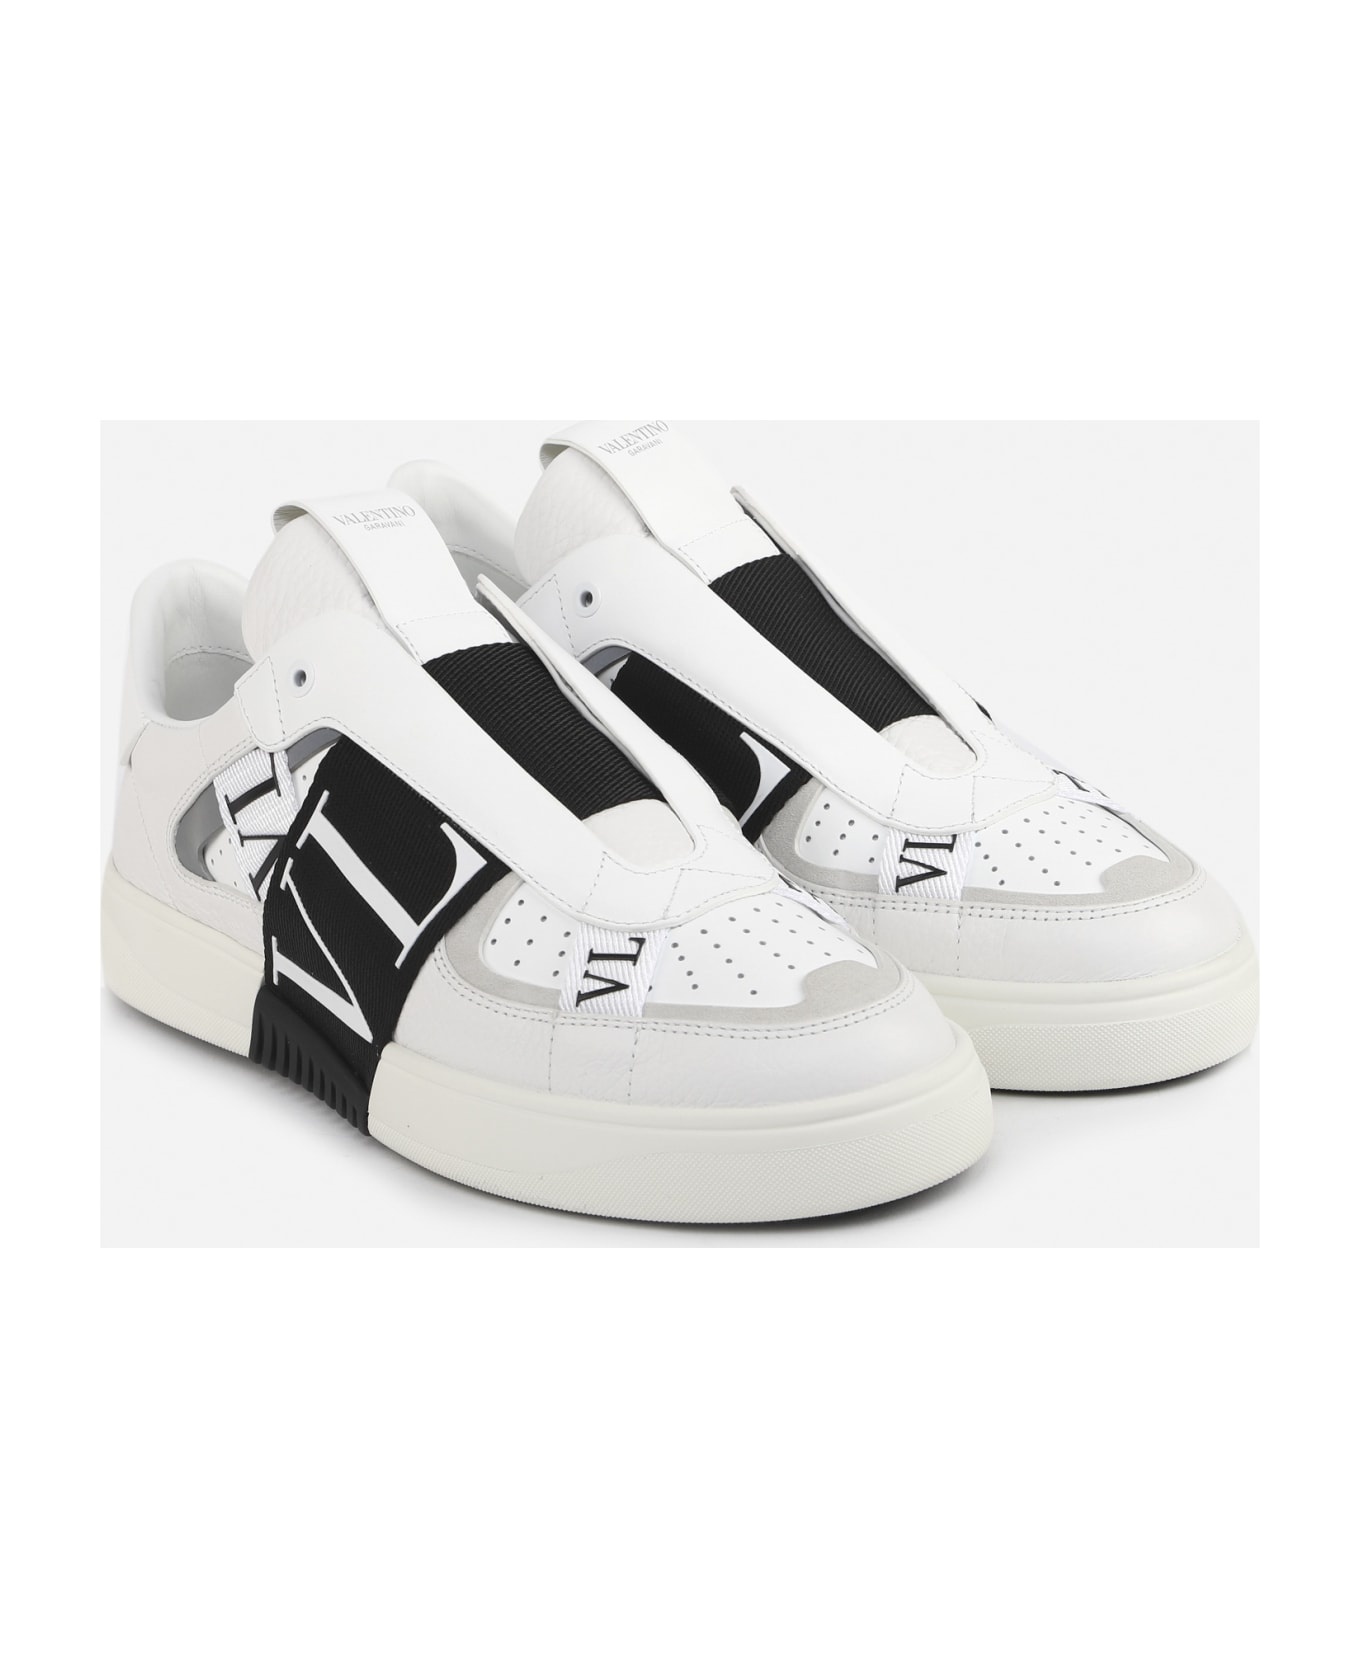 Vl7n Slip-on Sneakers In Leather - 2